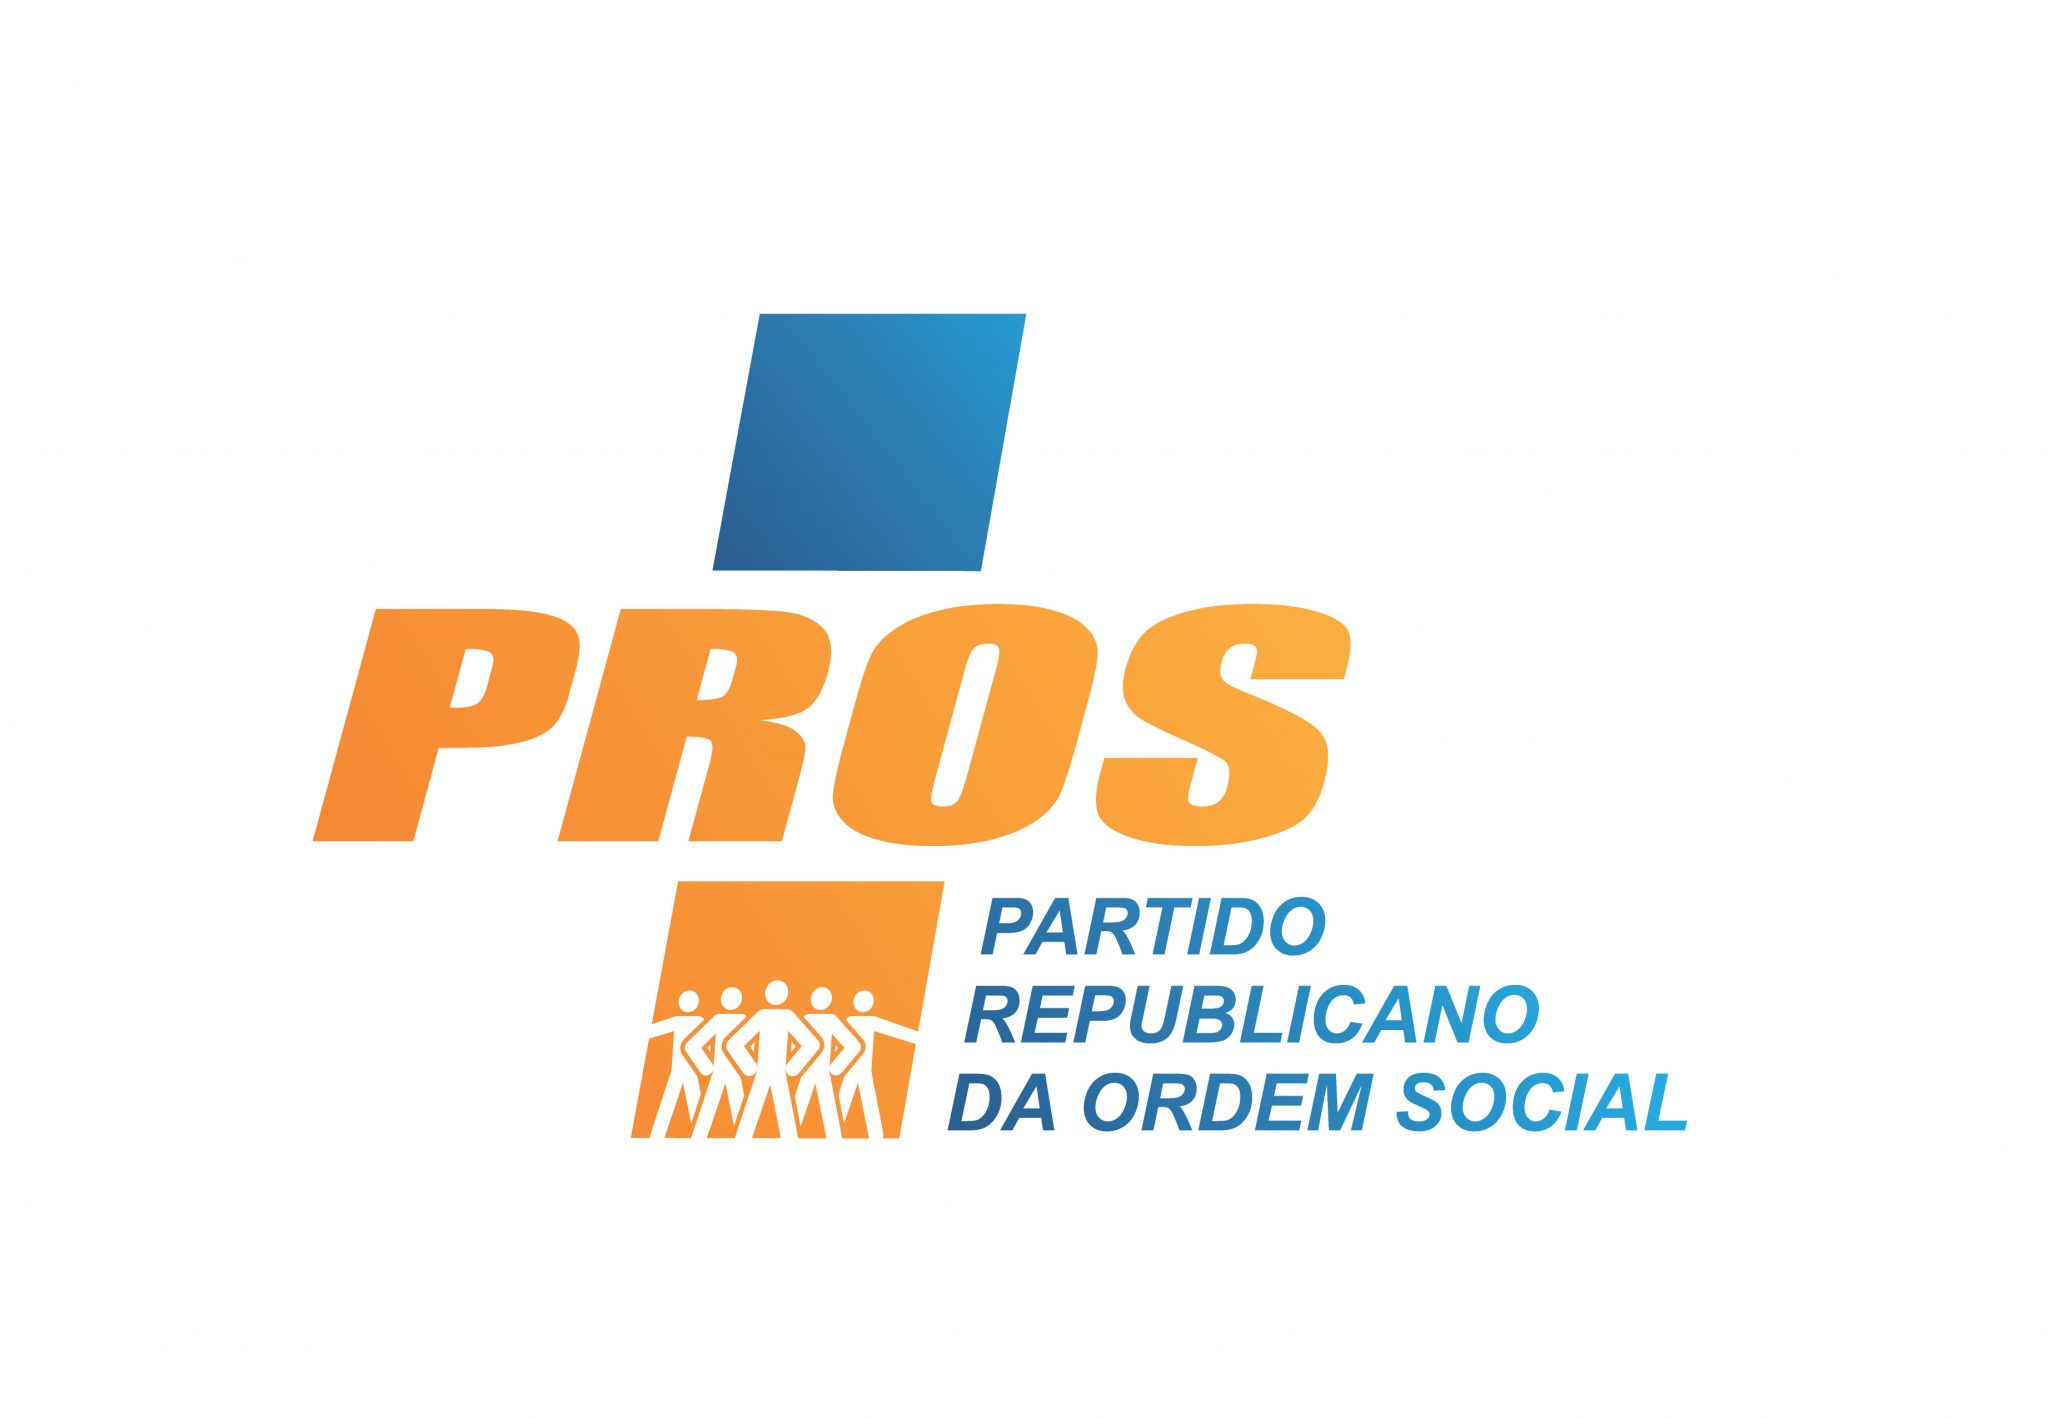 Partido PROS afirma já ter 30 candidatos a prefeito e vereadores em 60 cidades